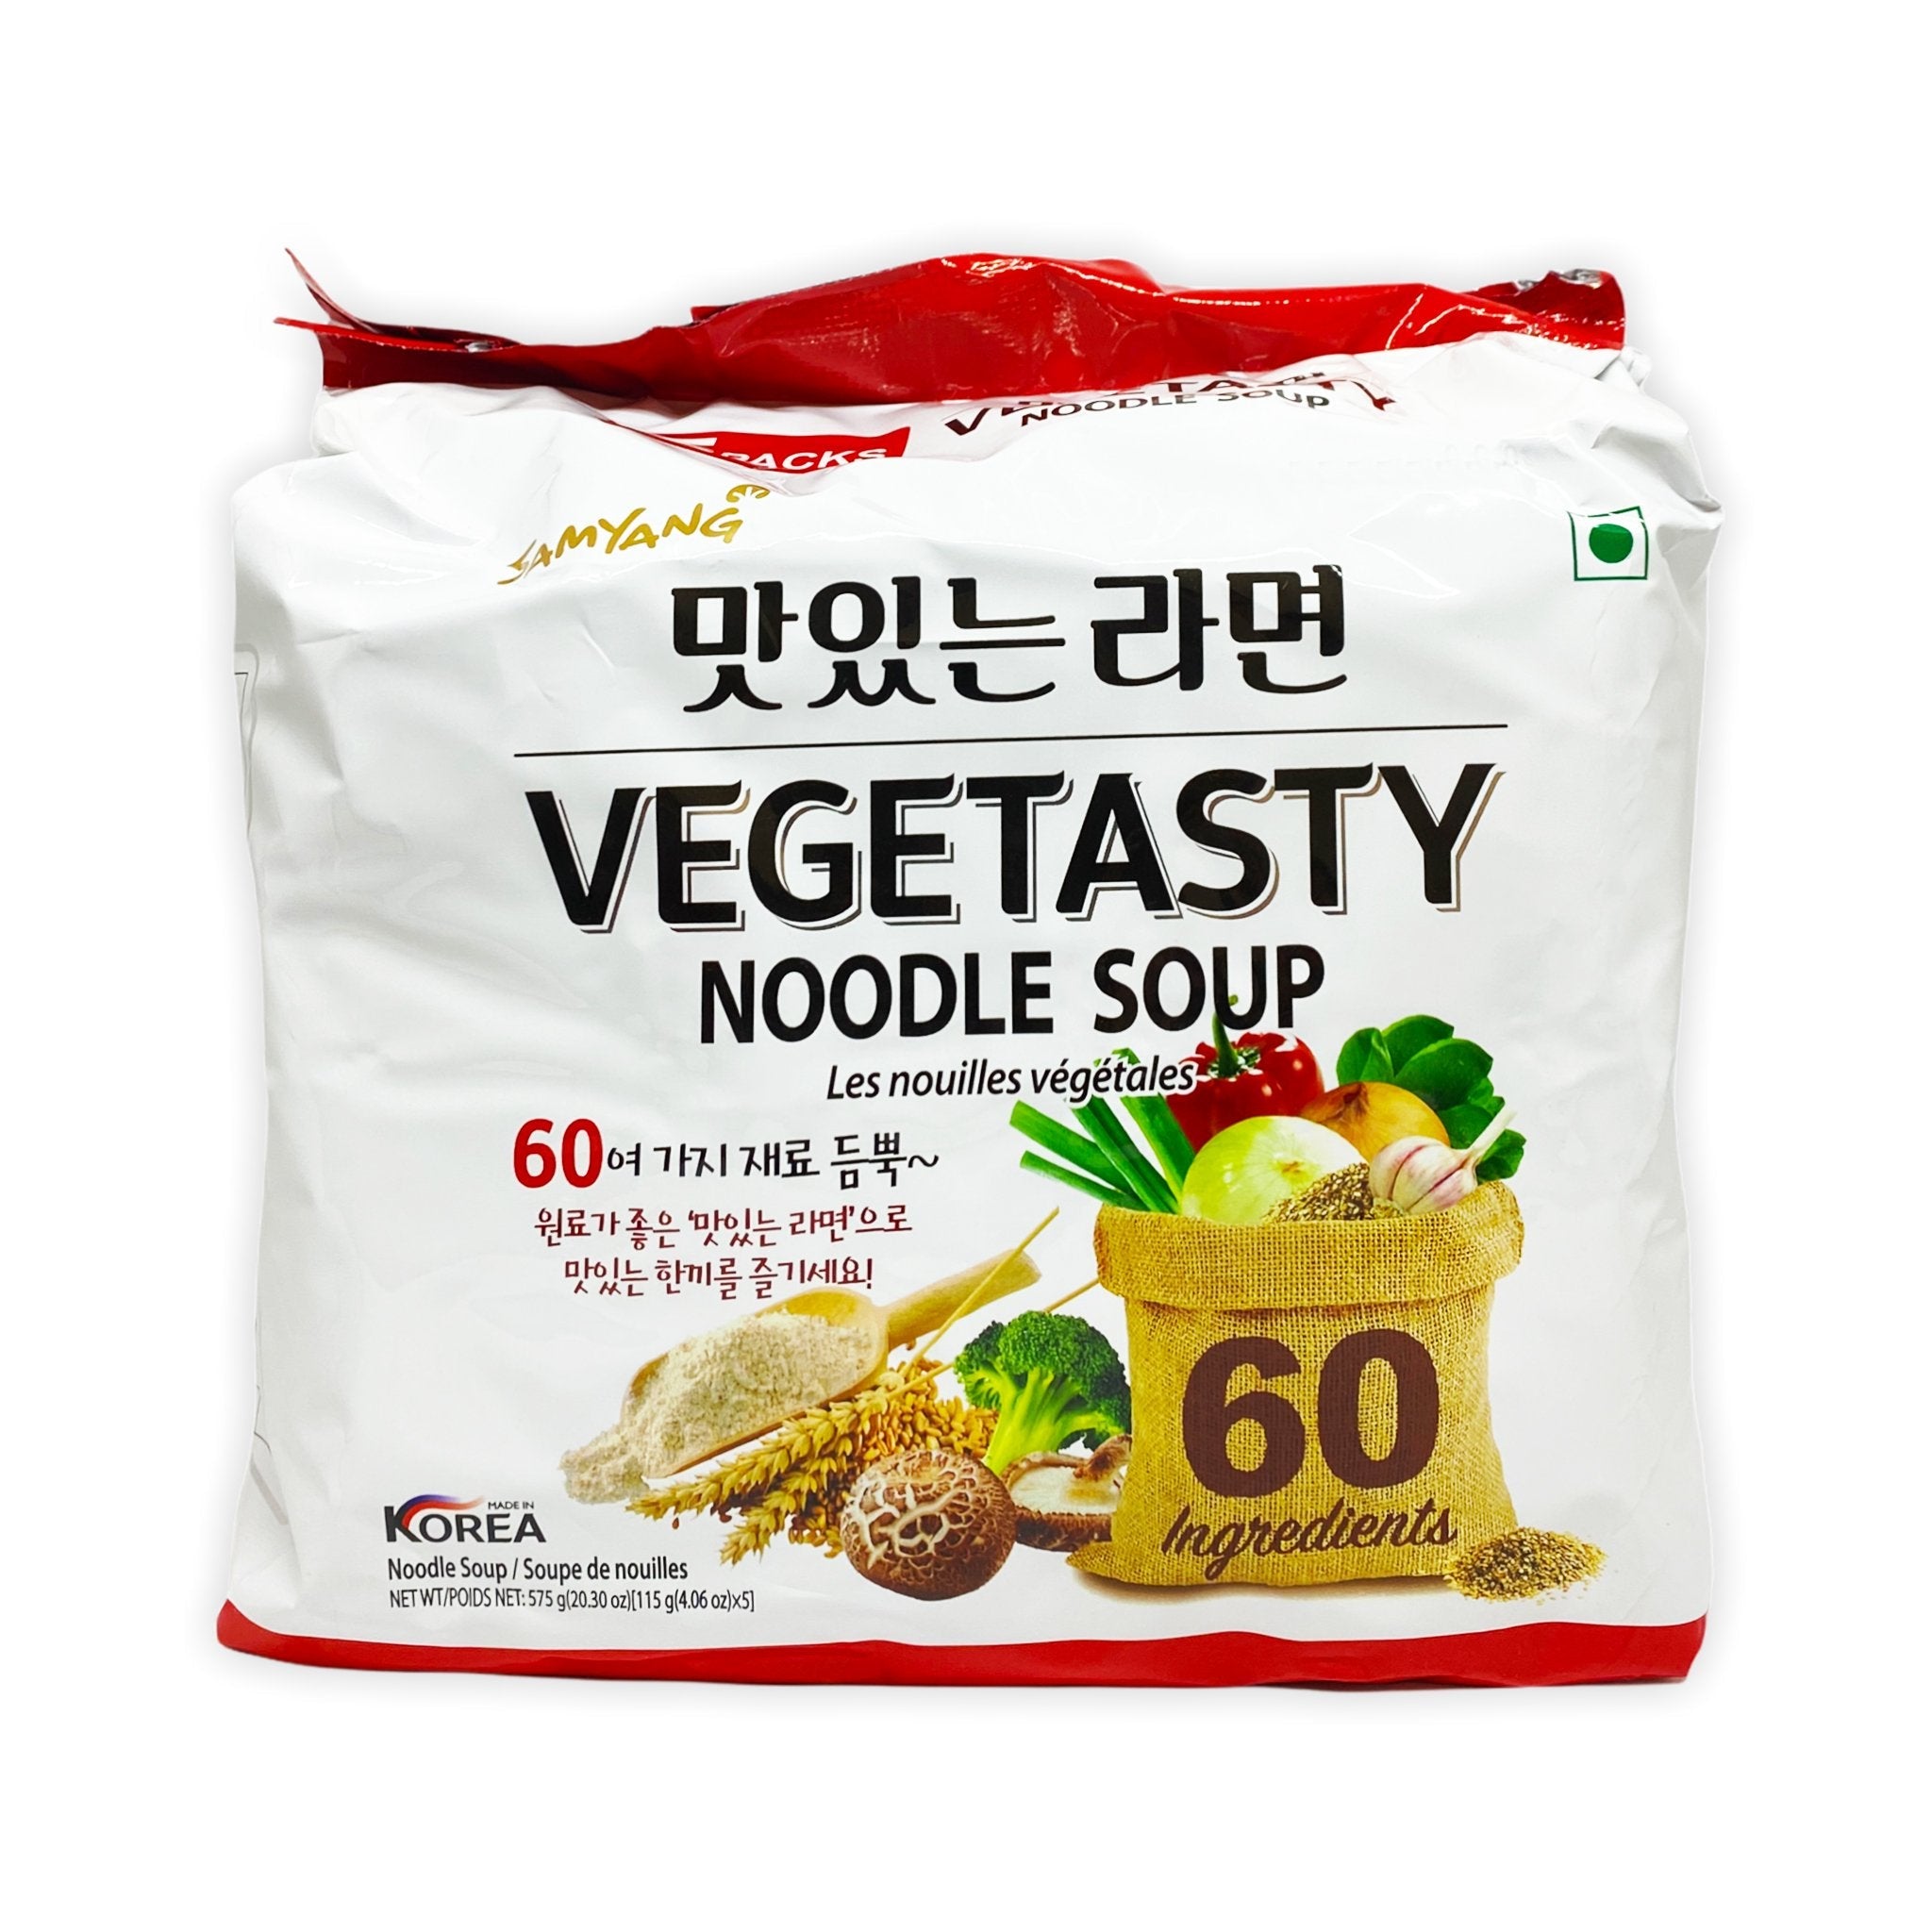 Samyang vegetasty noodle soup 575g